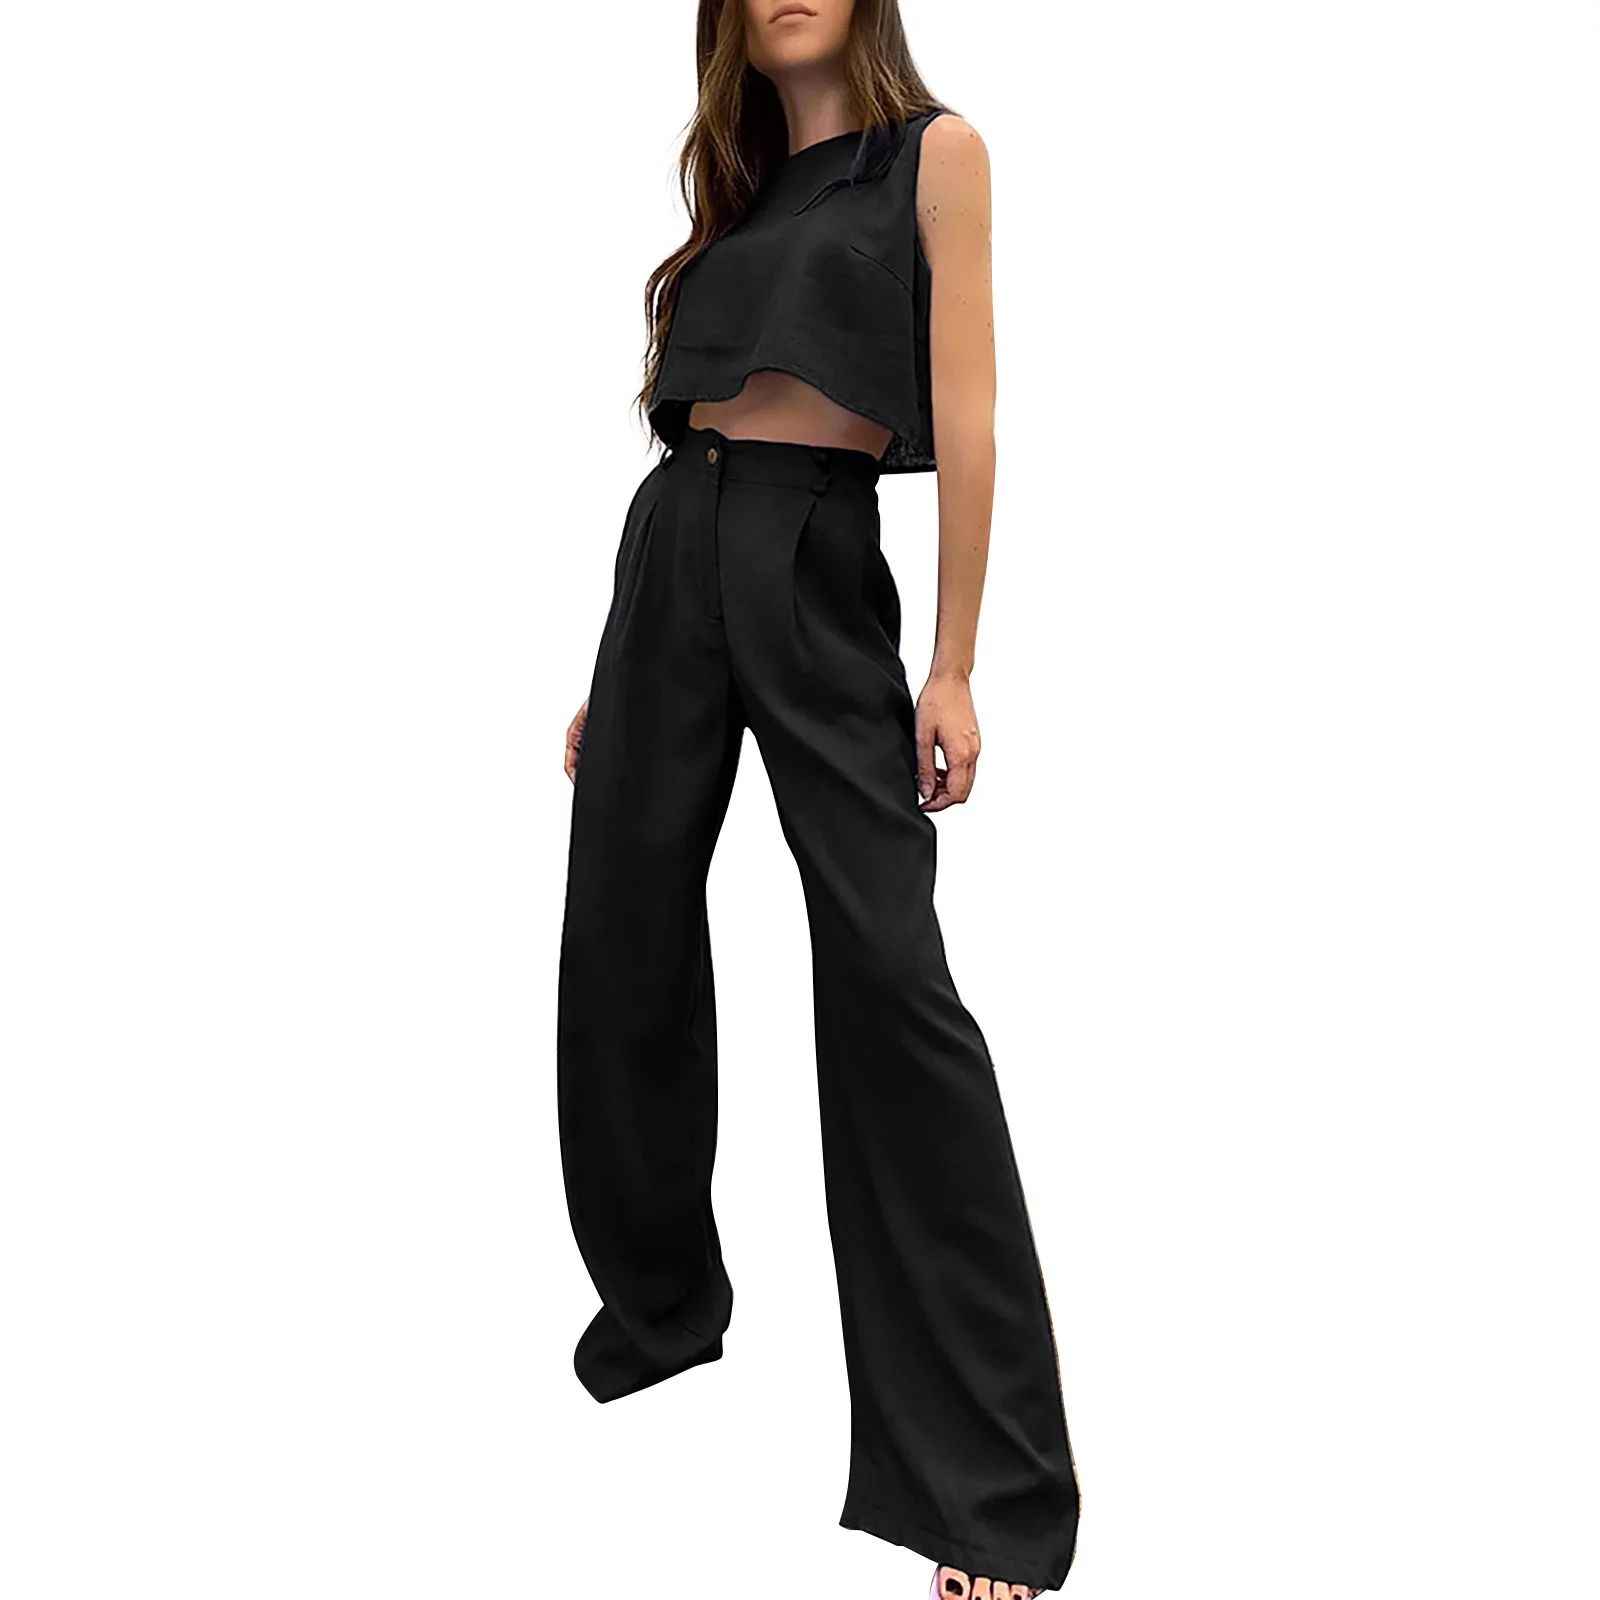 PMUYBHF Outfit for Women Date Night Two Piece Shorts Women's Cotton Linen Casual Fashion undershi... | Walmart (US)